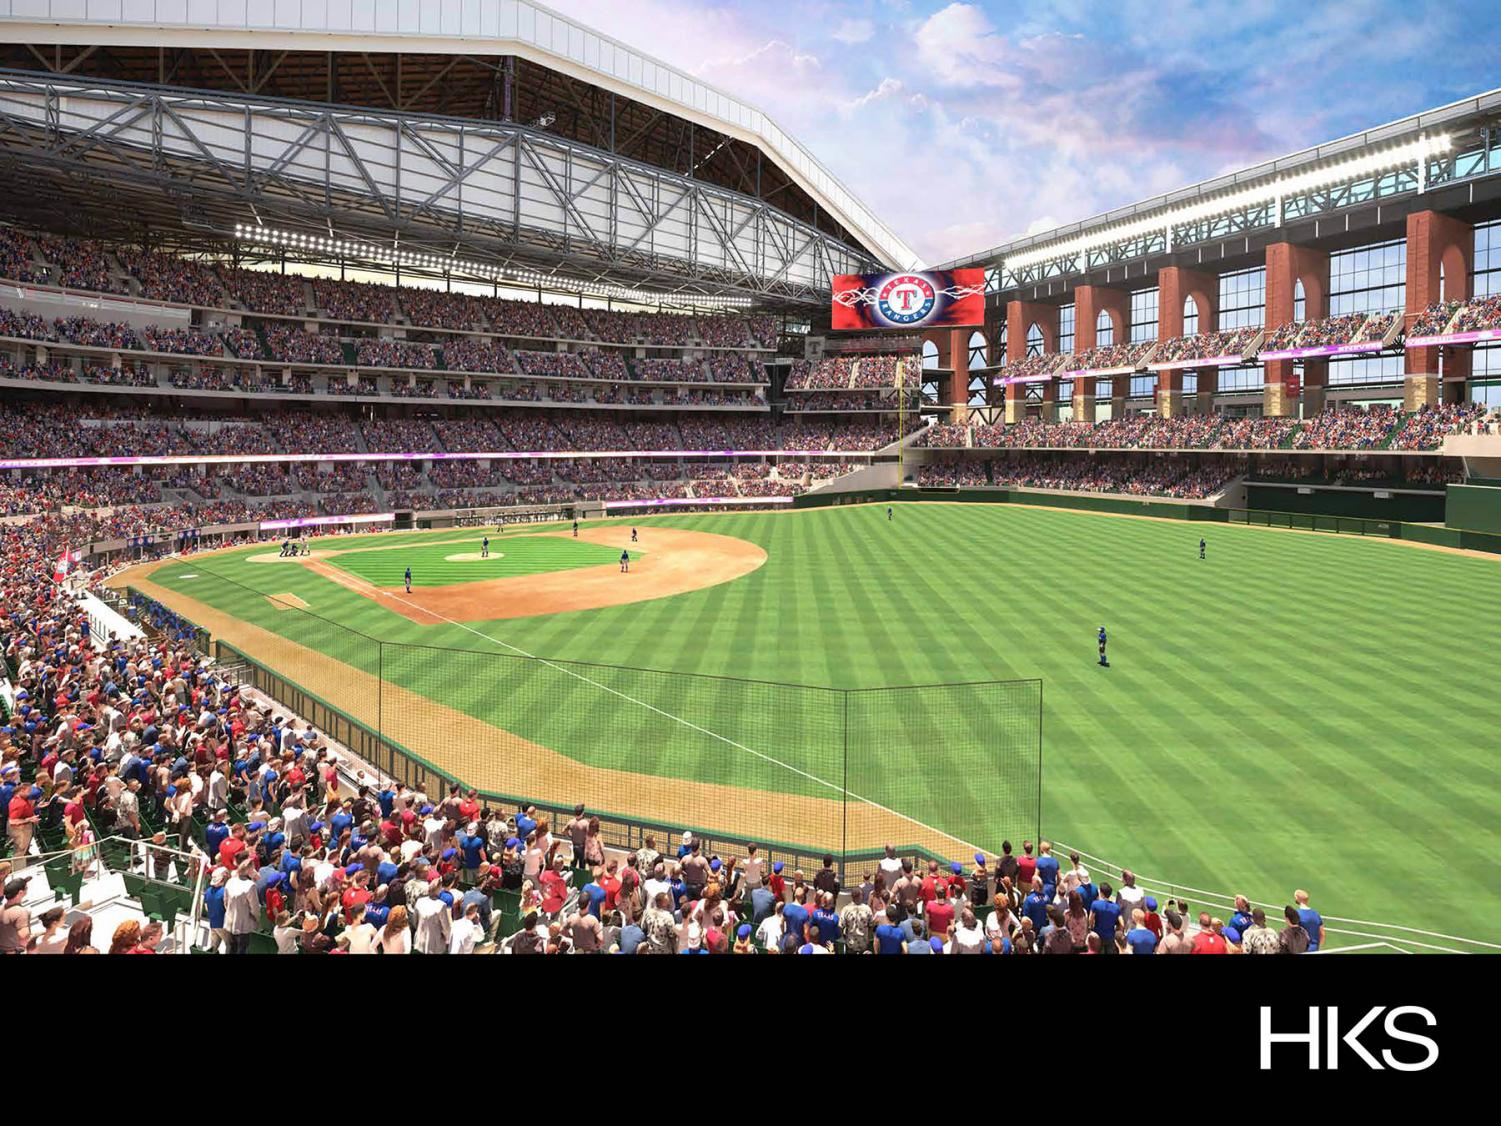 Texas Rangers' stadium capacity will be at 100% for 2021 MLB season